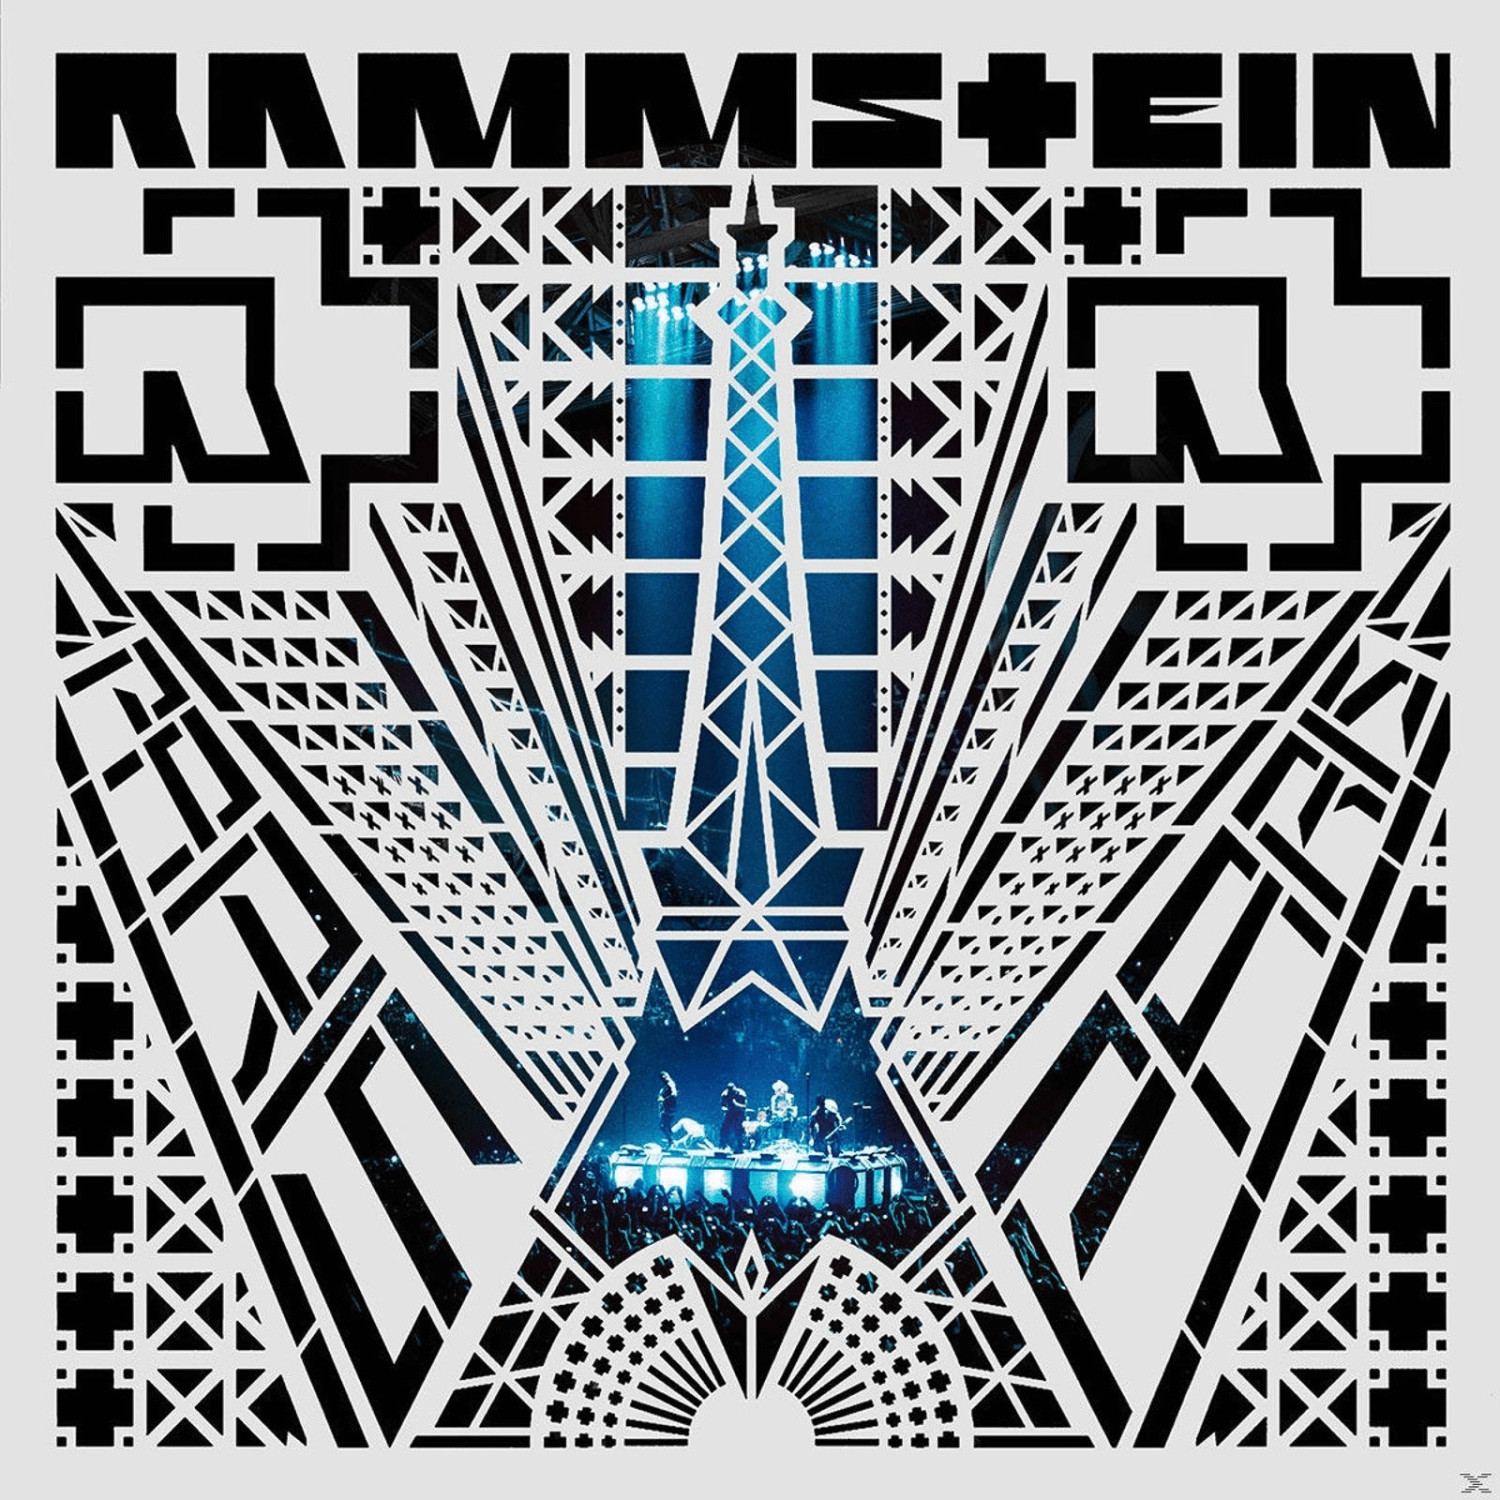 Rammstein - Rammstein: Paris (Deluxe Box Edt.) (Vinyl)